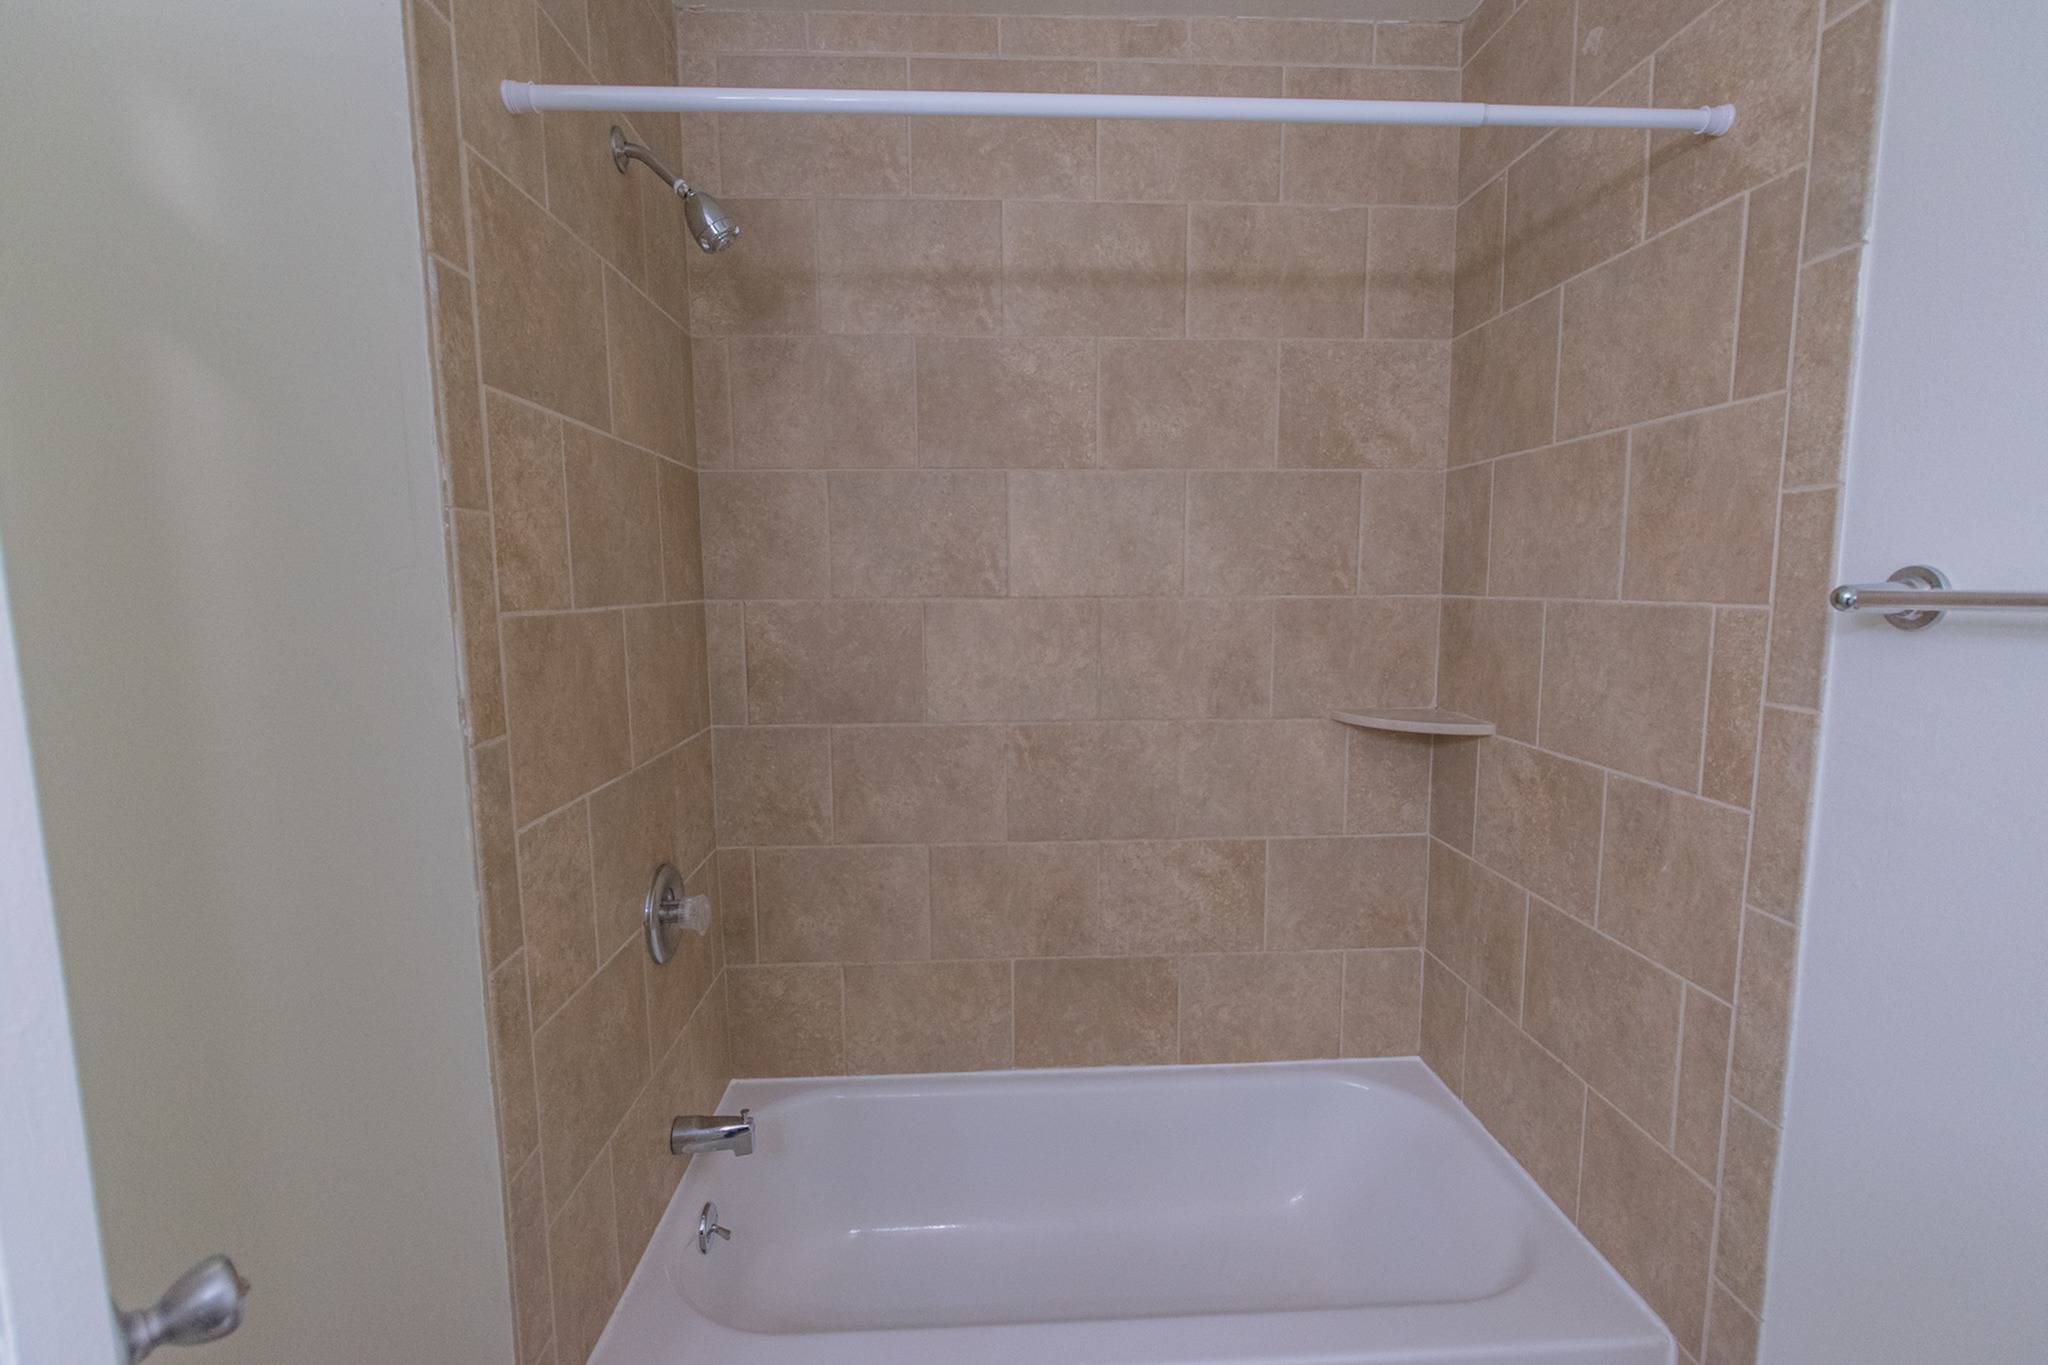 Shower tub inside a bathroom.